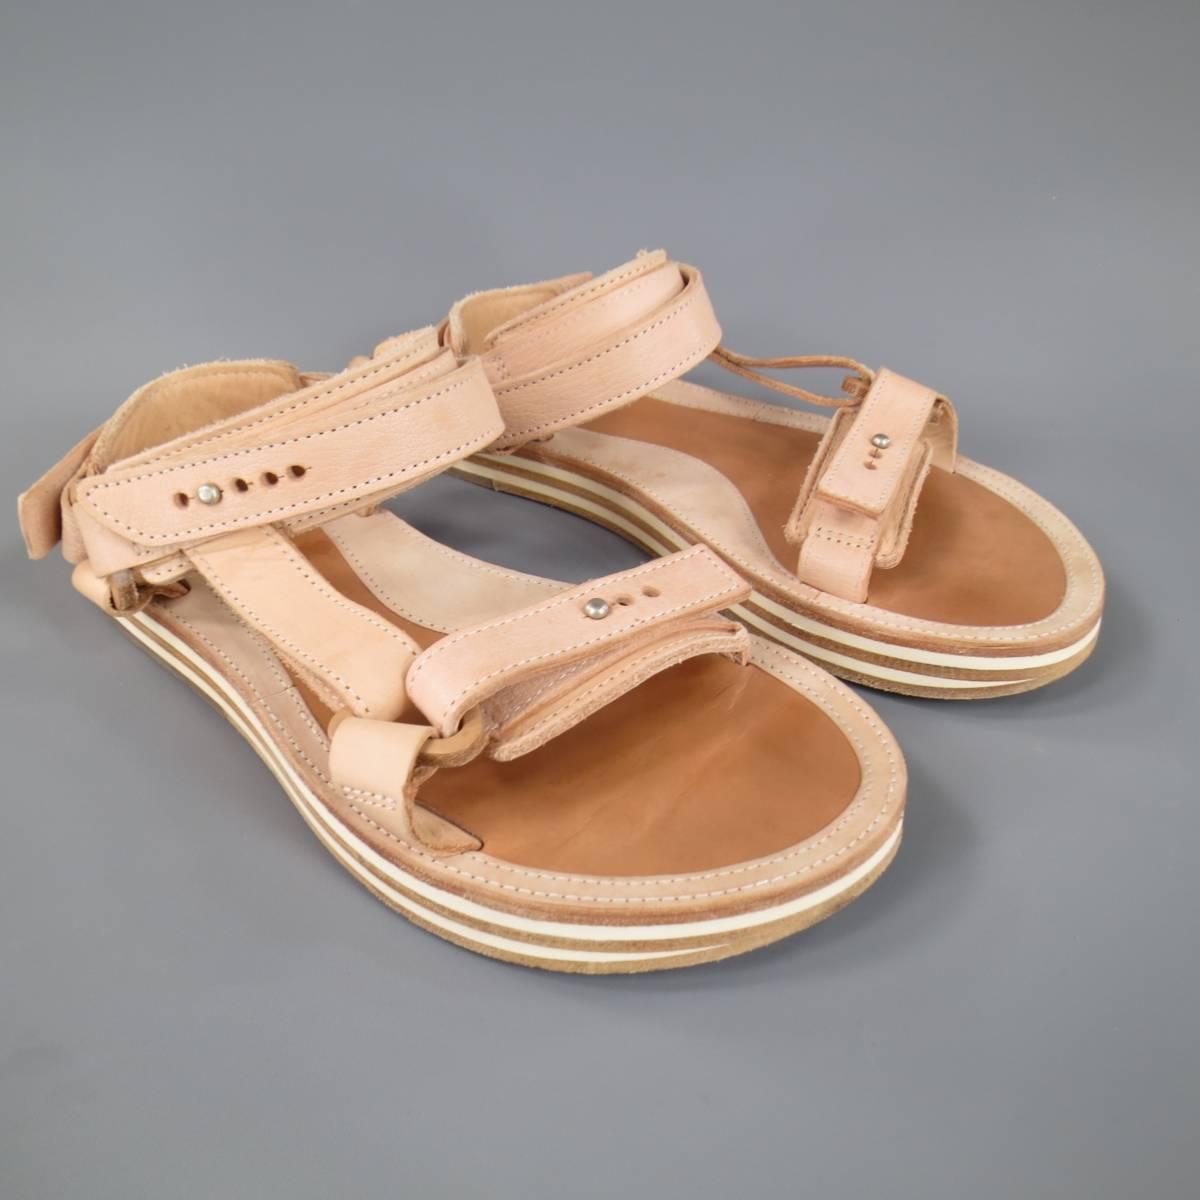 SACAI X HENDER SCHEME Size 10 Men's Natural Beige Leather Sandals 1